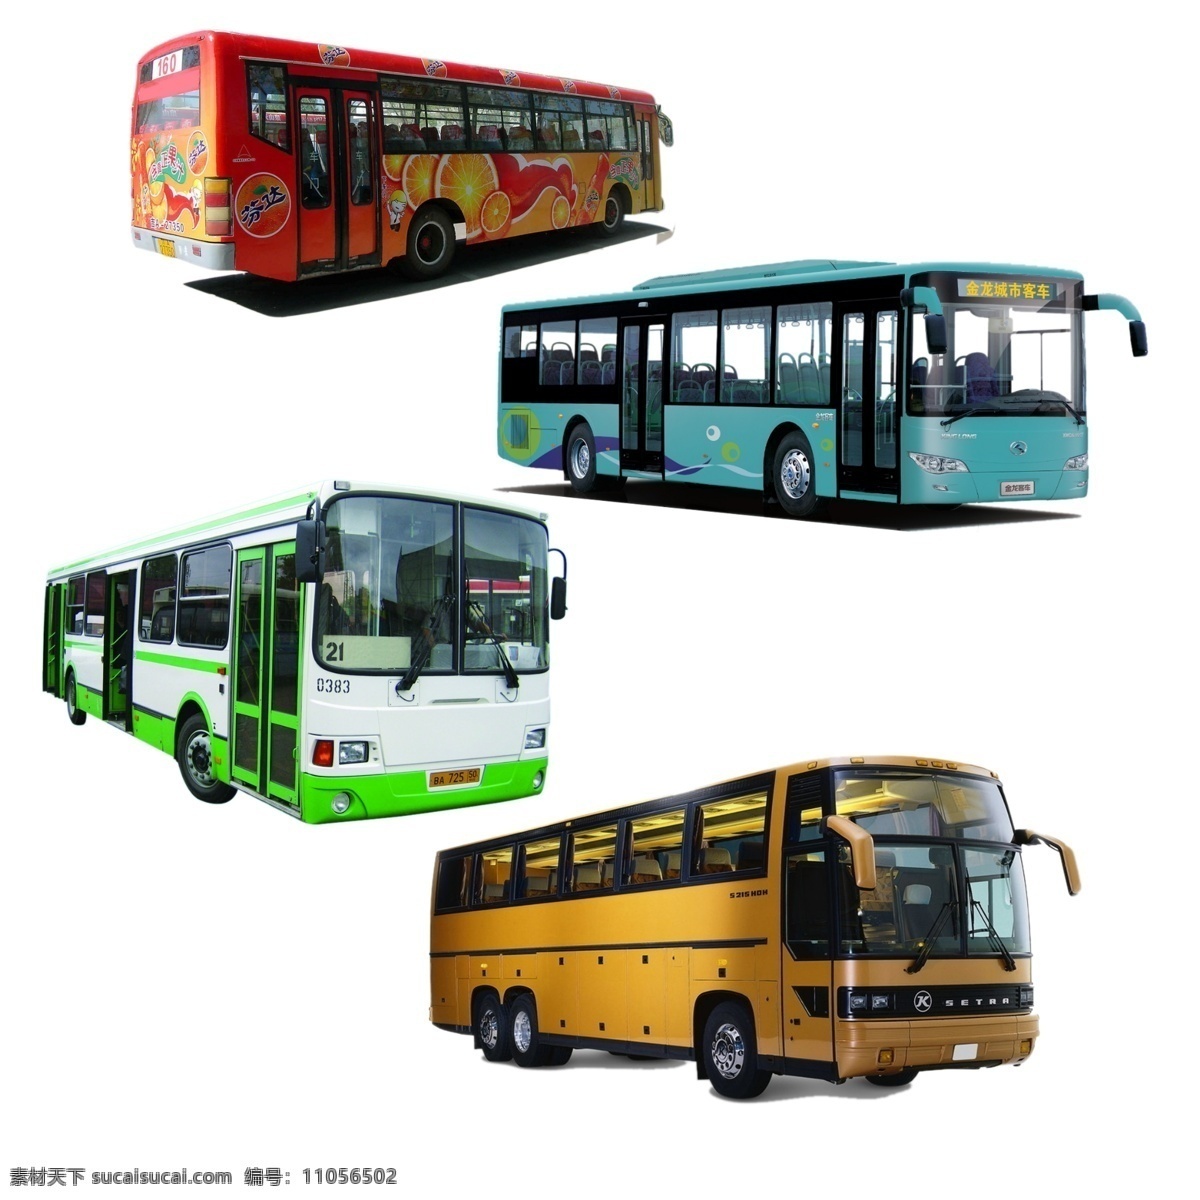 公交车 公交车图片 公交巴士 车 素材库 分层 源文件